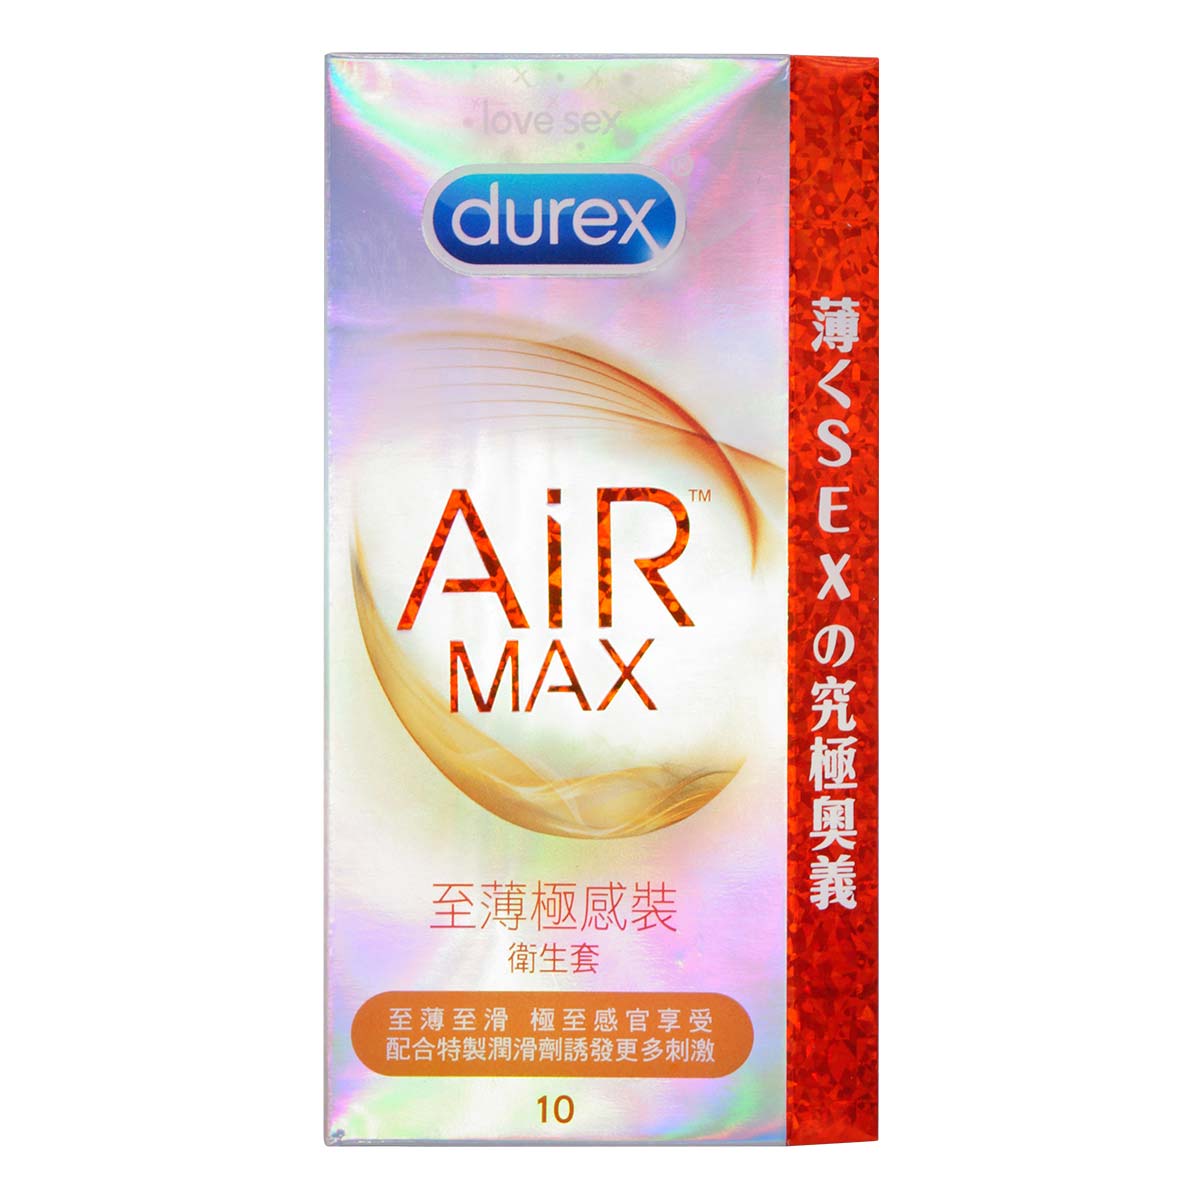 DUREX 【限價】Air Max 至薄極感裝 乳膠安全套 10 片裝 X 3 件 優惠套裝 購買